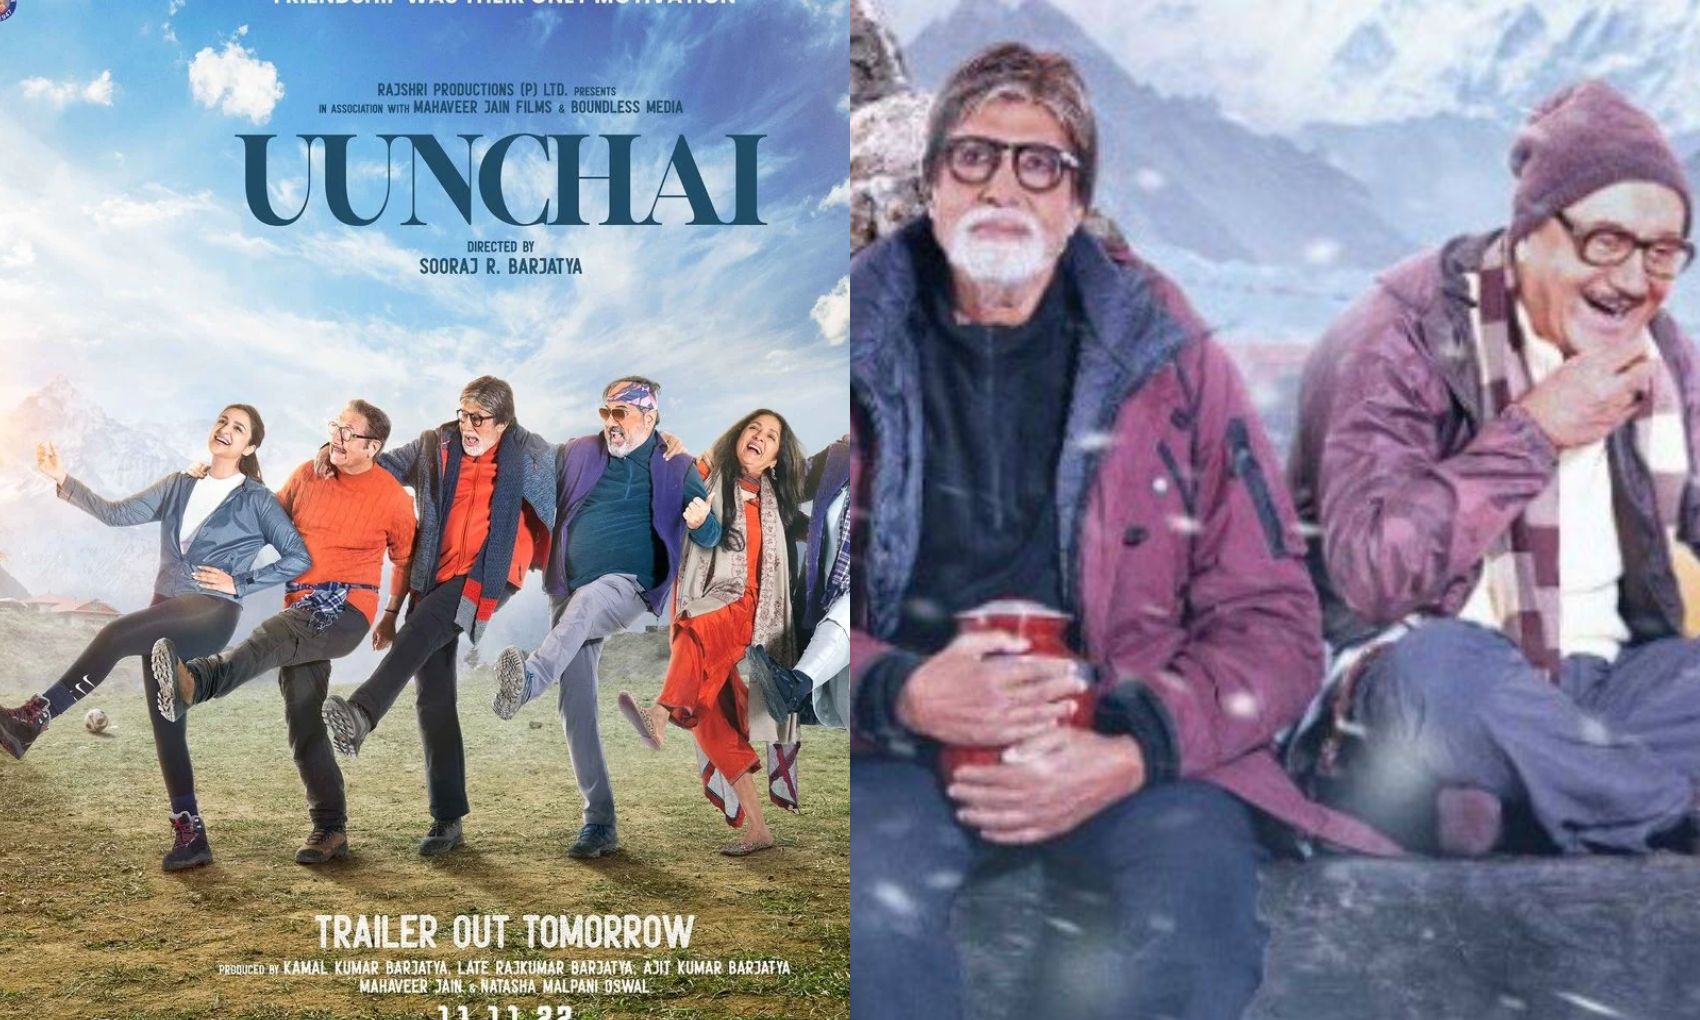 Uunchai Twitter Review: अमिताभ बच्चन स्टारर फिल्म ‘ऊंचाई’ देखकर फैंस हुए इमोशनल, दिया जबरदस्त रिव्यू